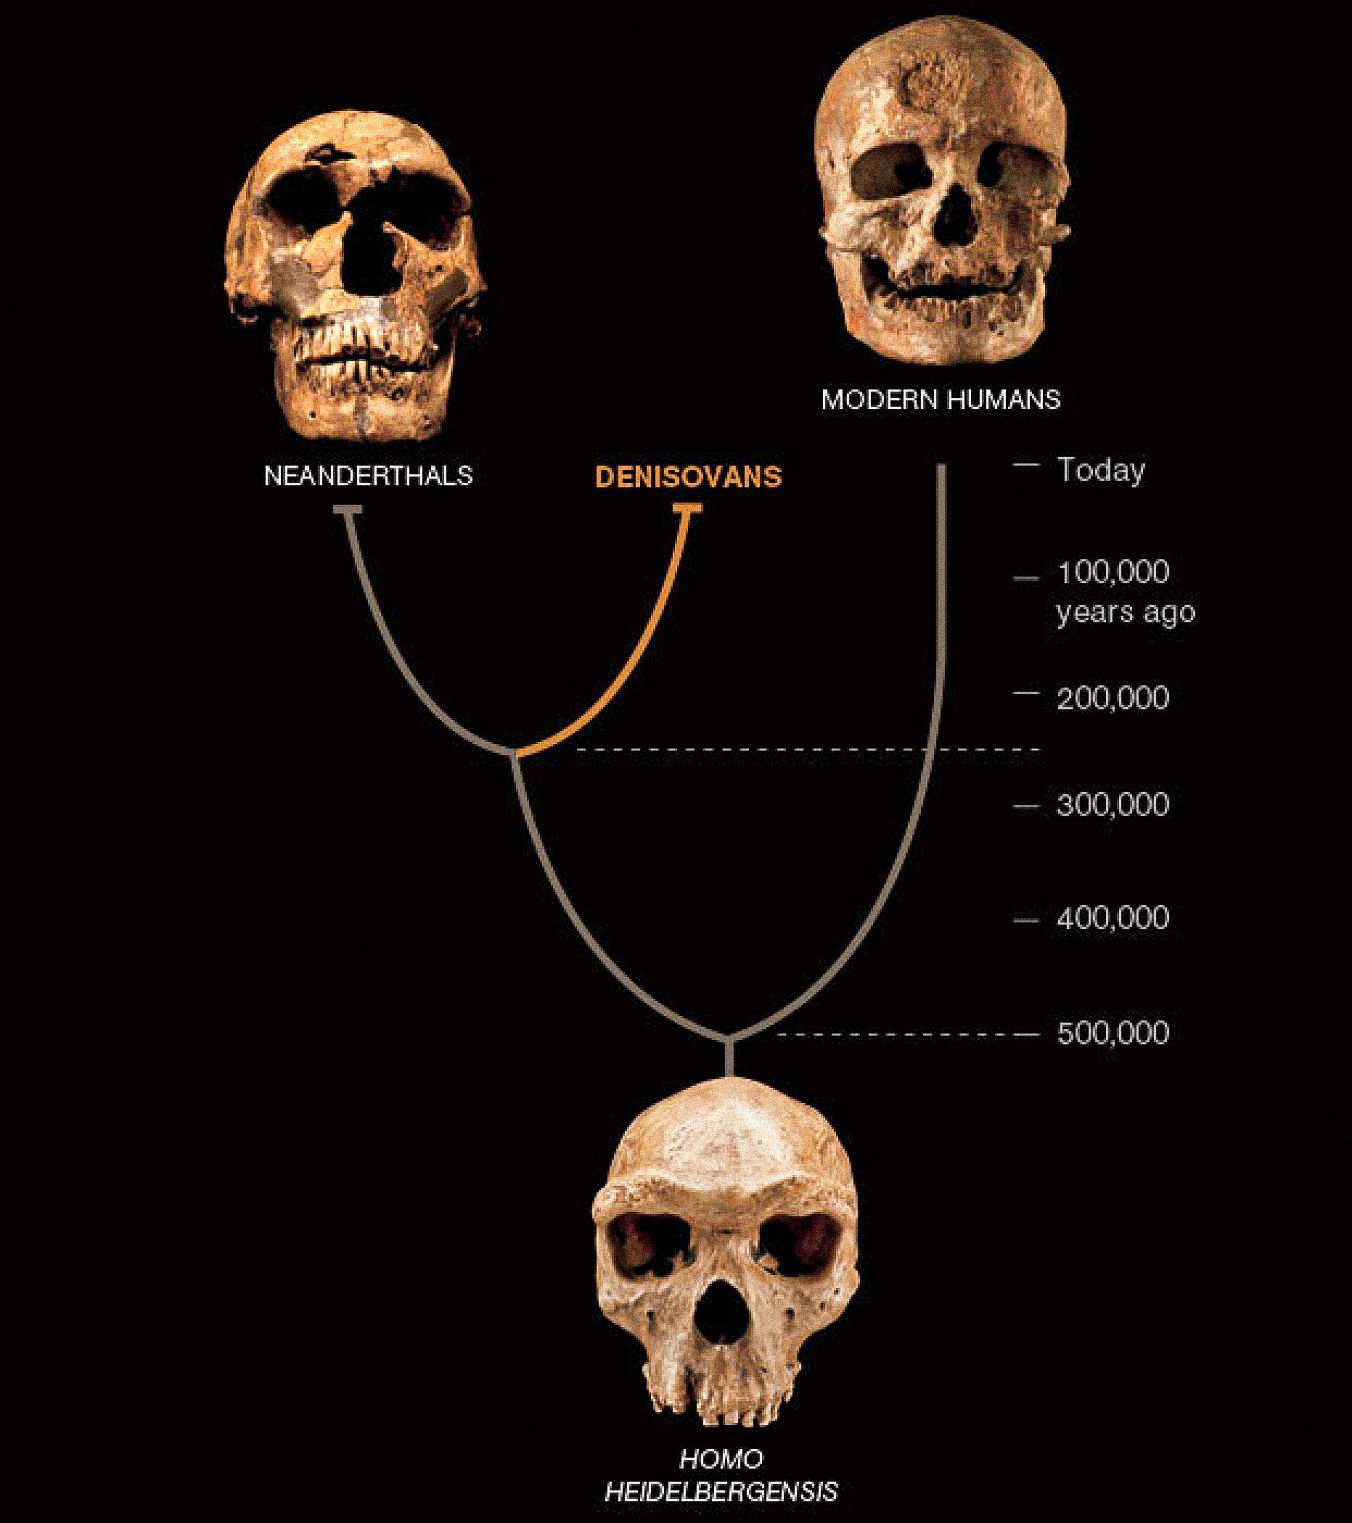 Denisovalılar olarak adlandırılan üçüncü bir insan türü, Asya'da Neandertaller ve erken modern insanlarla birlikte var olmuş gibi görünüyor. Son ikisi bol fosil ve eserlerden bilinmektedir. Denisovalılar şimdiye kadar sadece bir kemik çipi ve iki dişten alınan DNA ile tanımlandılar - ancak bu, insan hikayesine yeni bir bükülme olduğunu ortaya koyuyor.